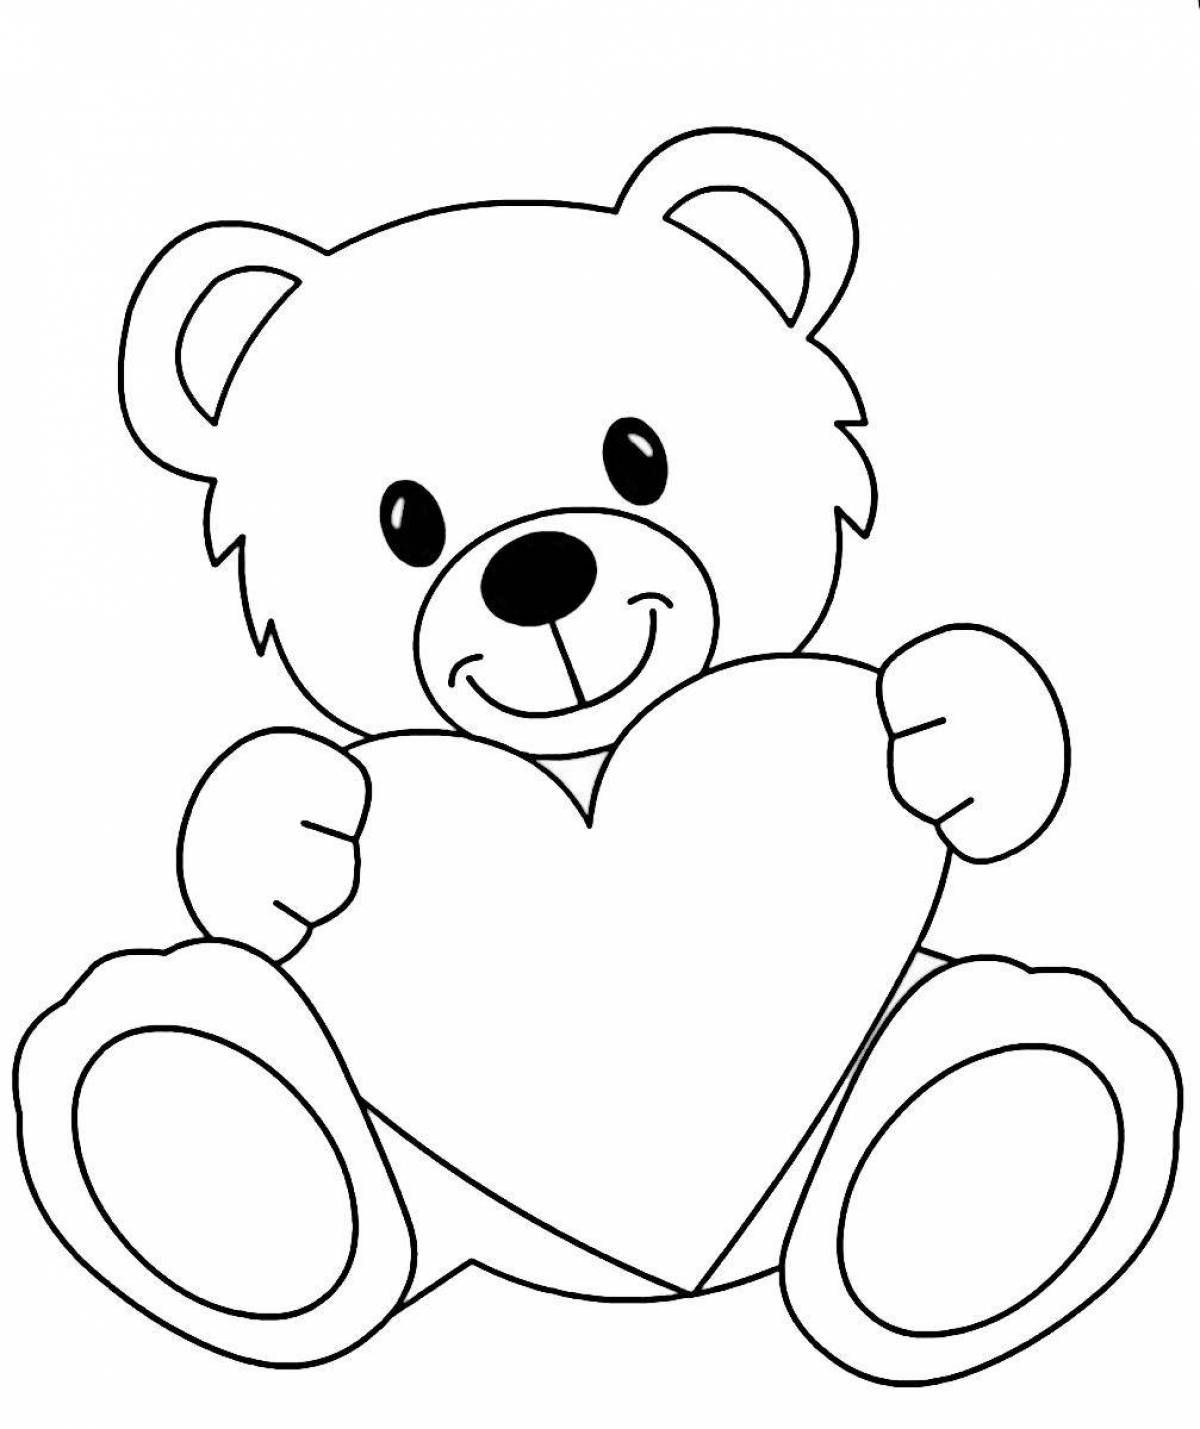 Cute cute teddy bear coloring book